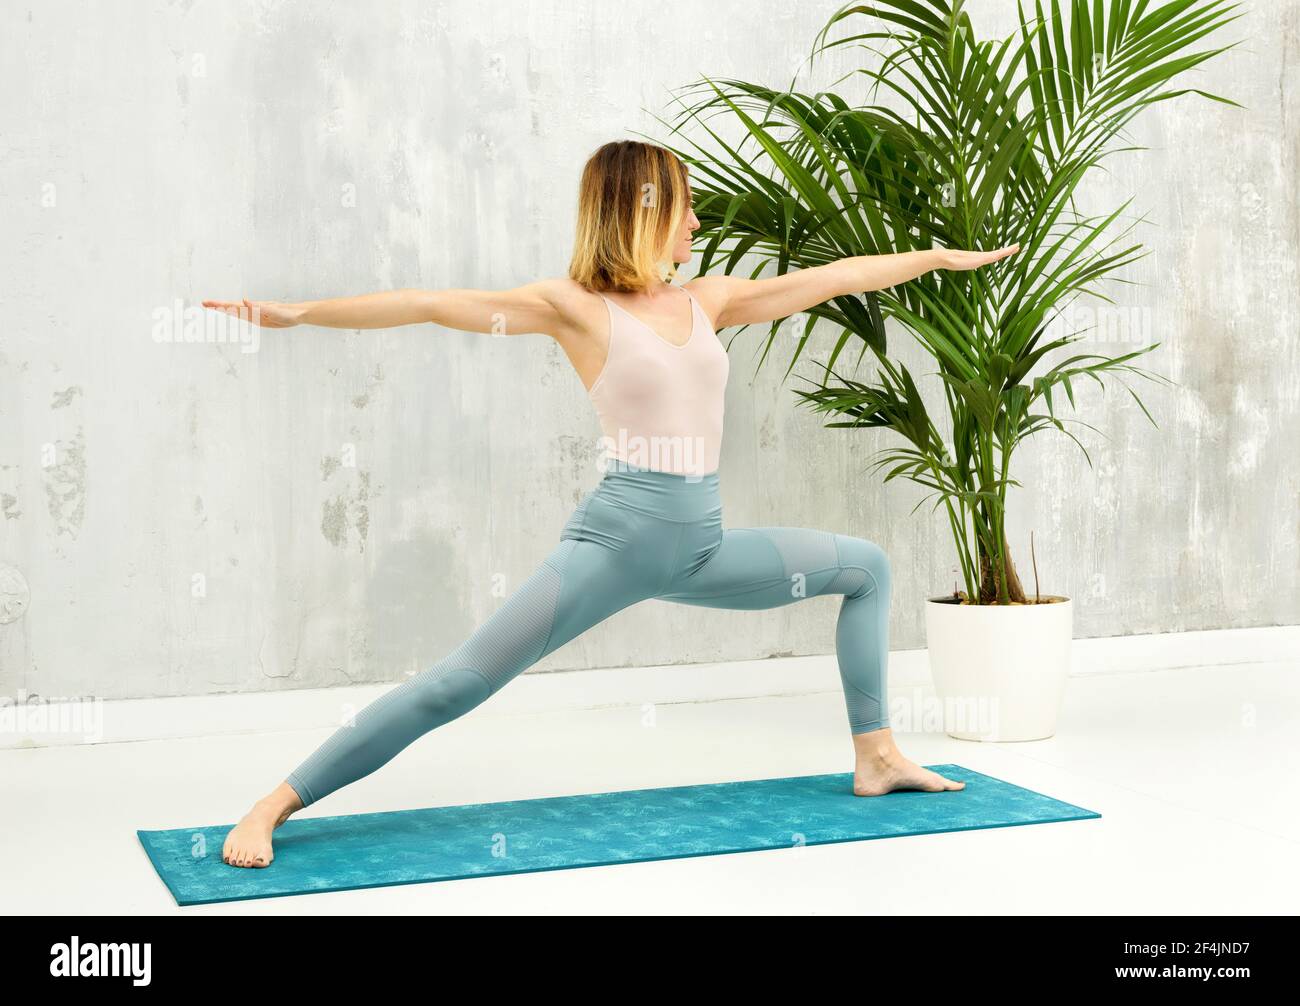 Femme faisant un Virabhadrasana II fente avant yoga pose pour étirer et renforcer son hamstring, fléchisseur de hanche et muscles d'aine dans une santé et une forme physique Banque D'Images